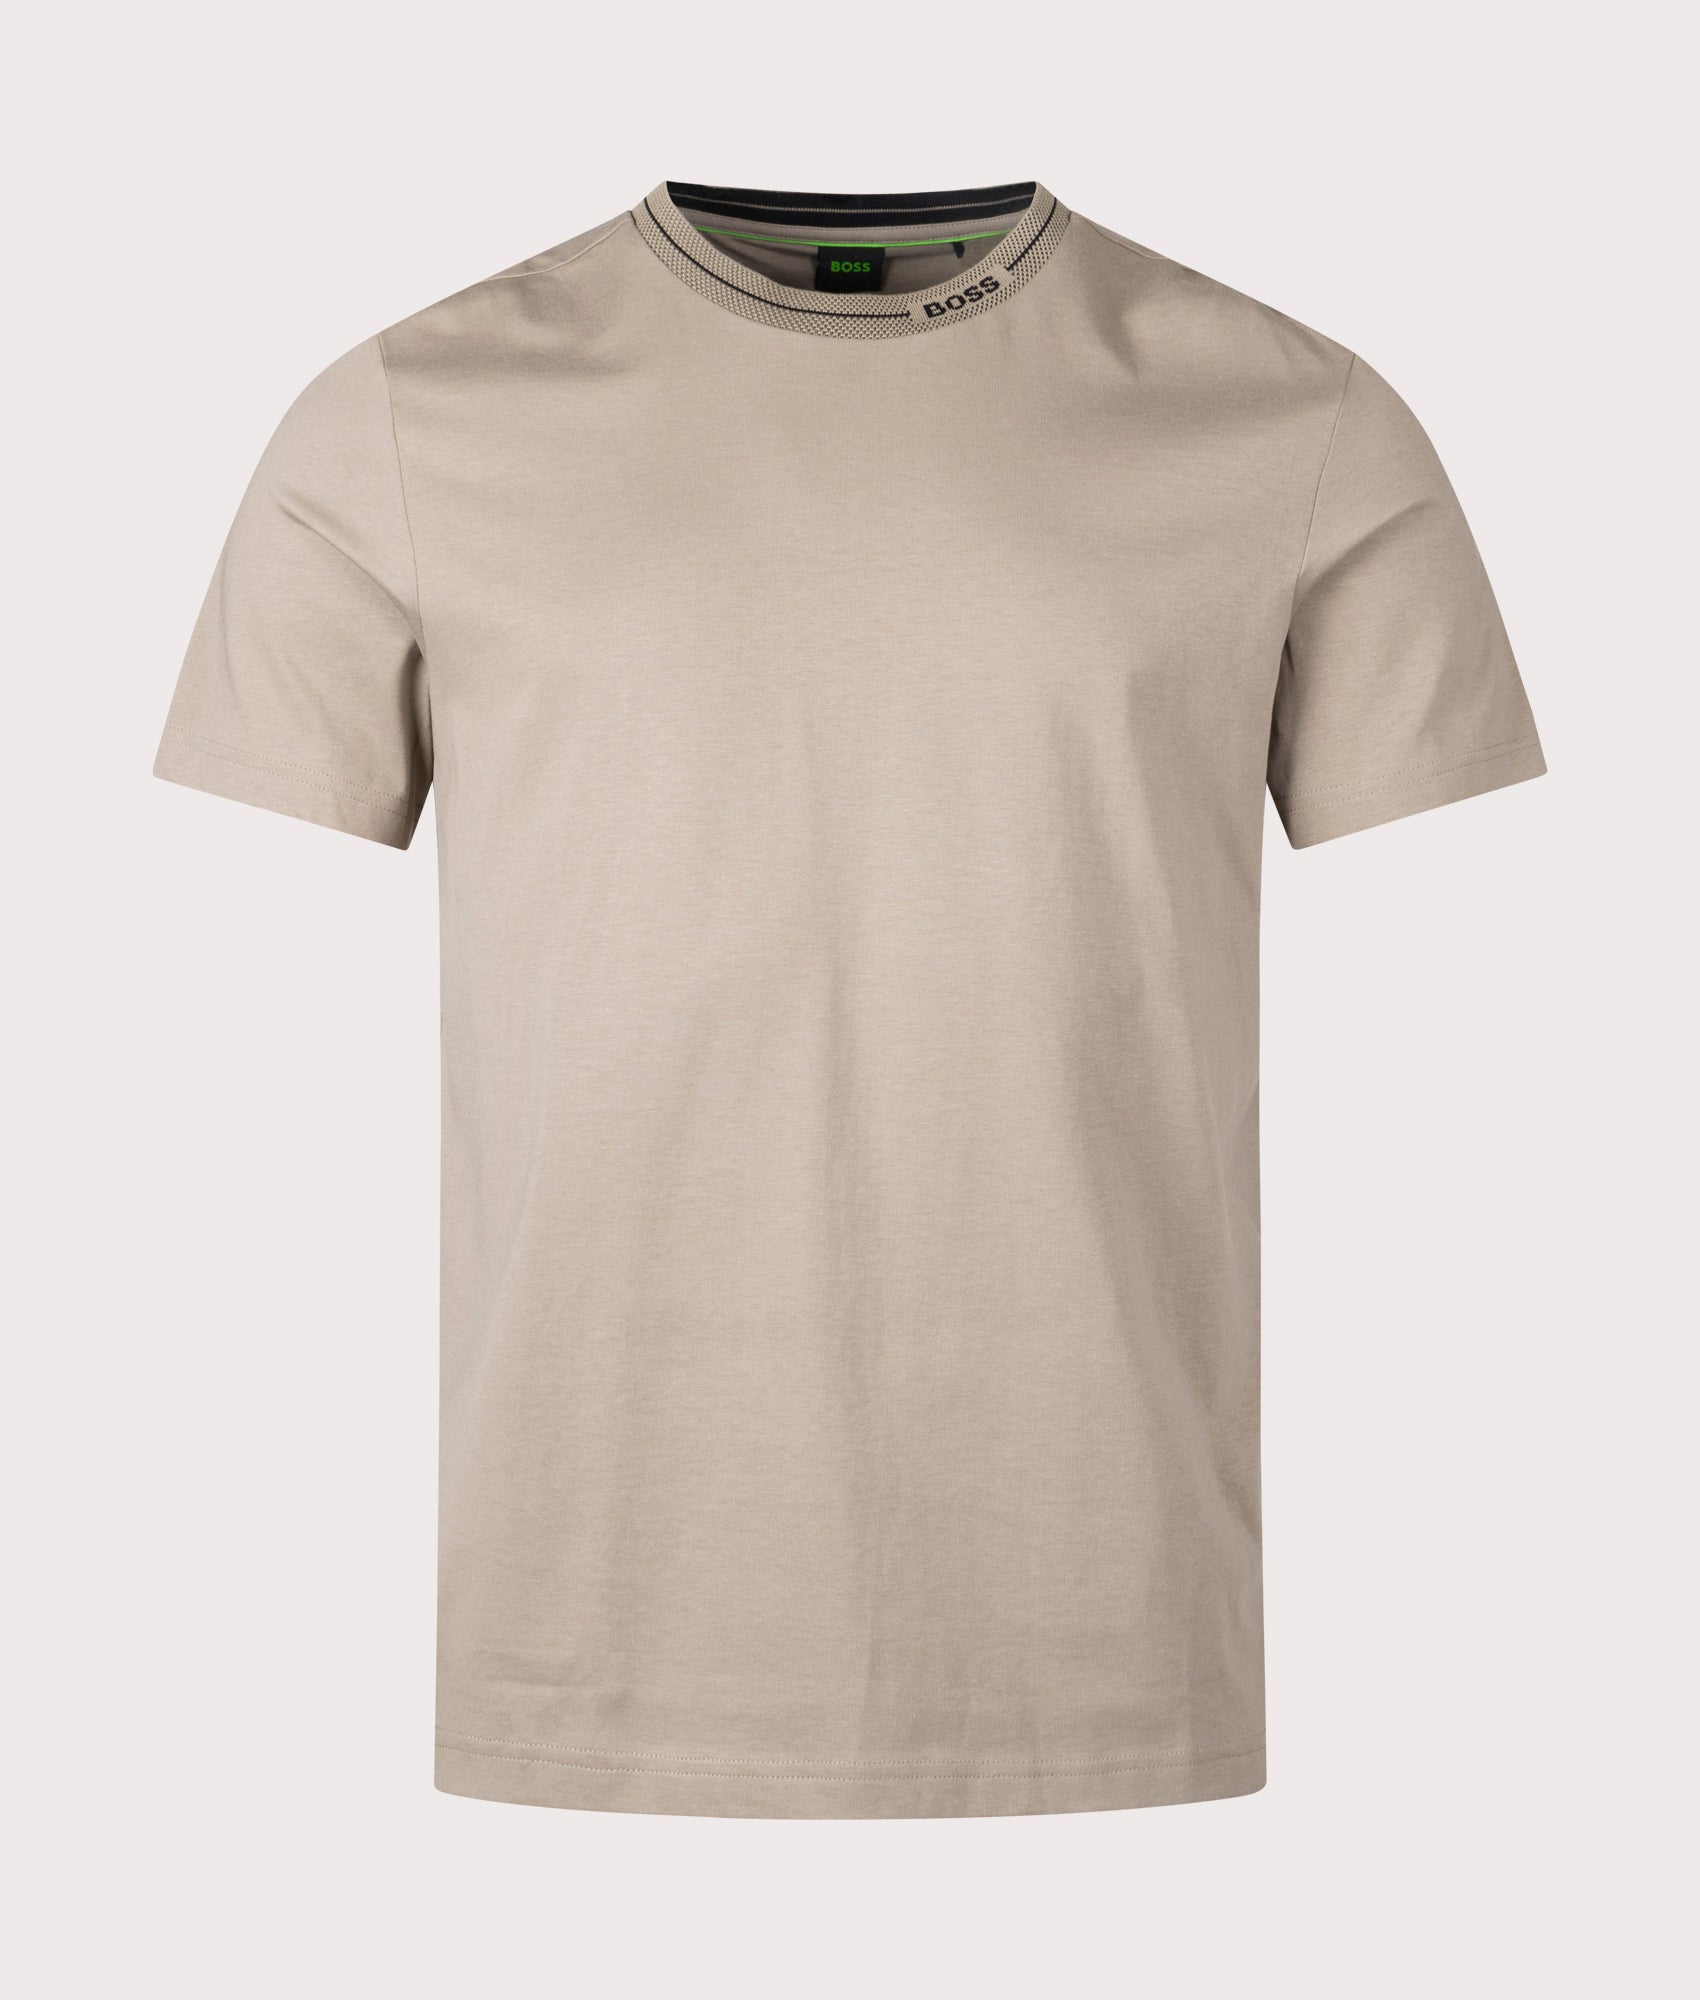 BOSS Mens Tee 11 T-Shirt - Colour: 334 Light/Pastel Green - Size: XL